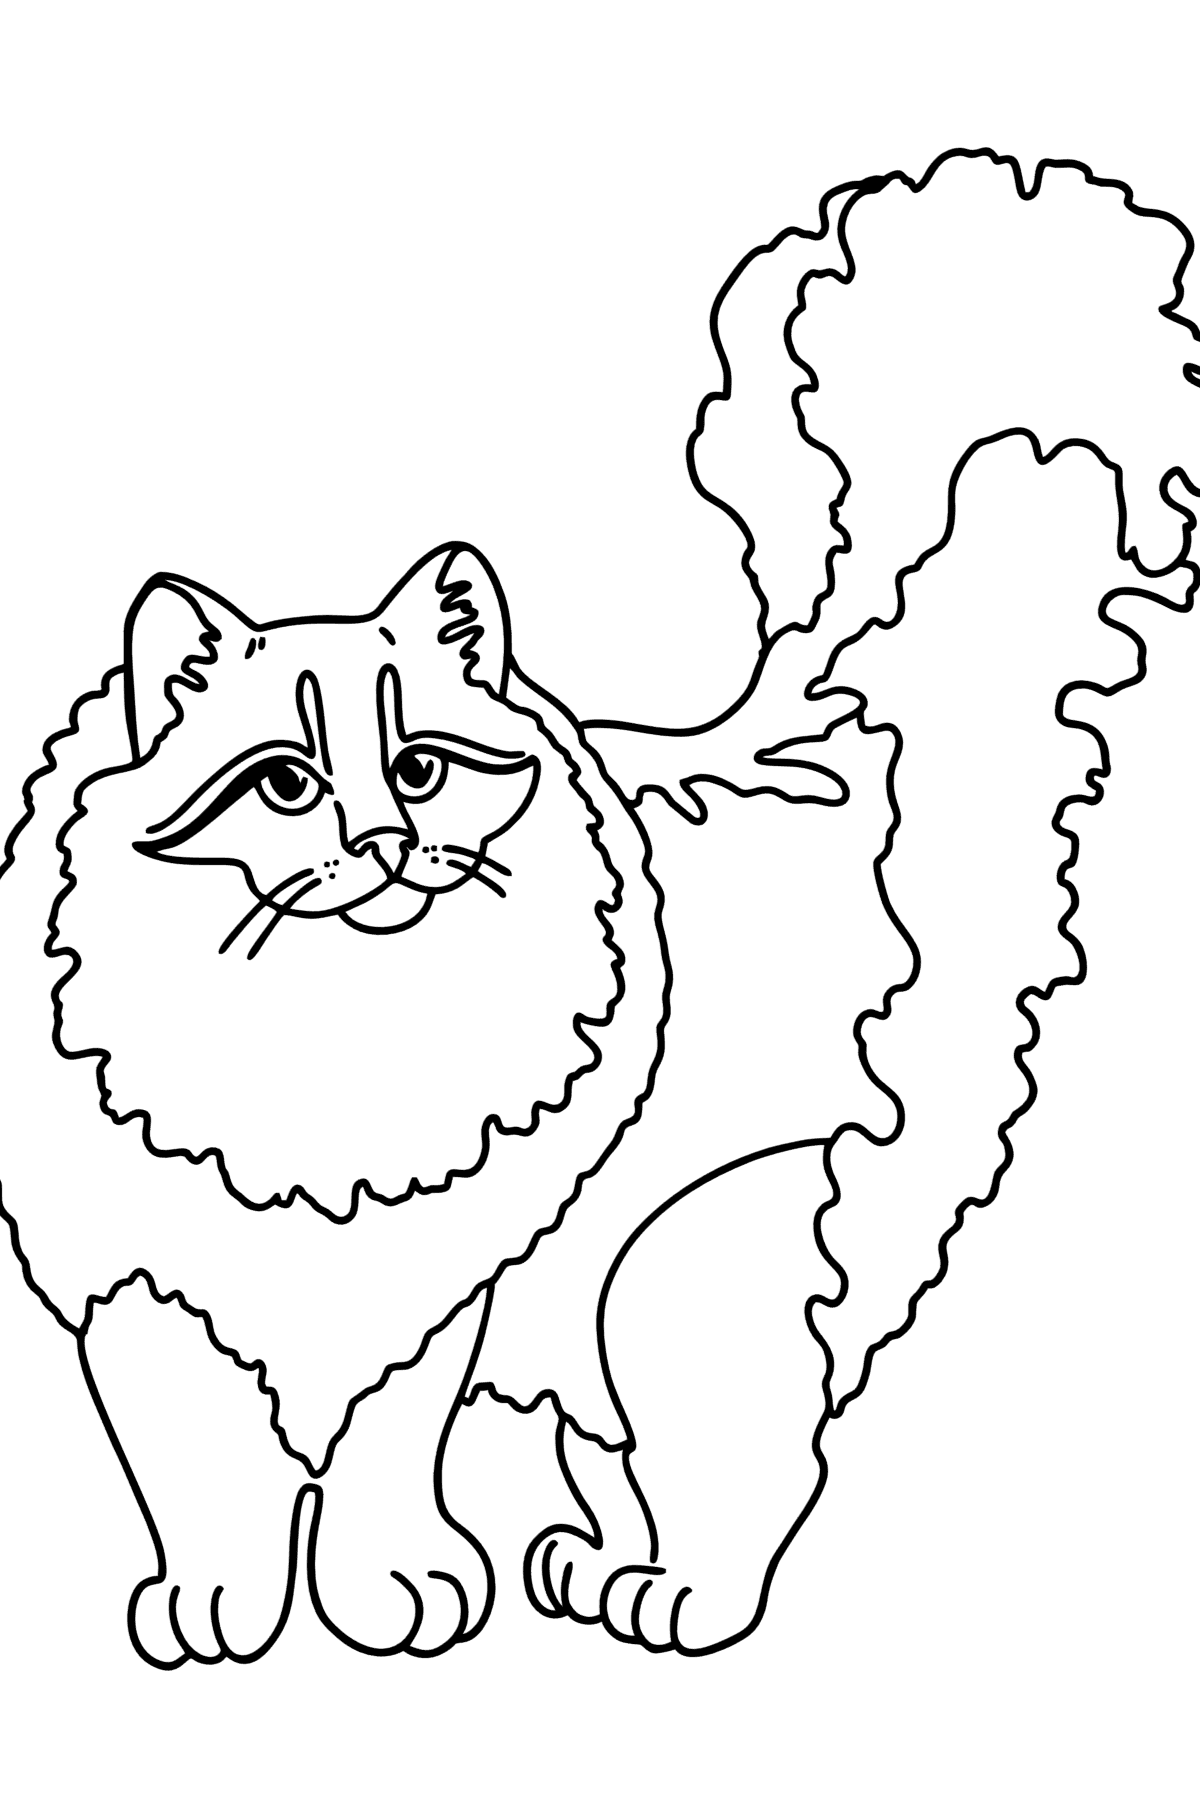 Раскраска Сибирская кошка - Картинки для Детей